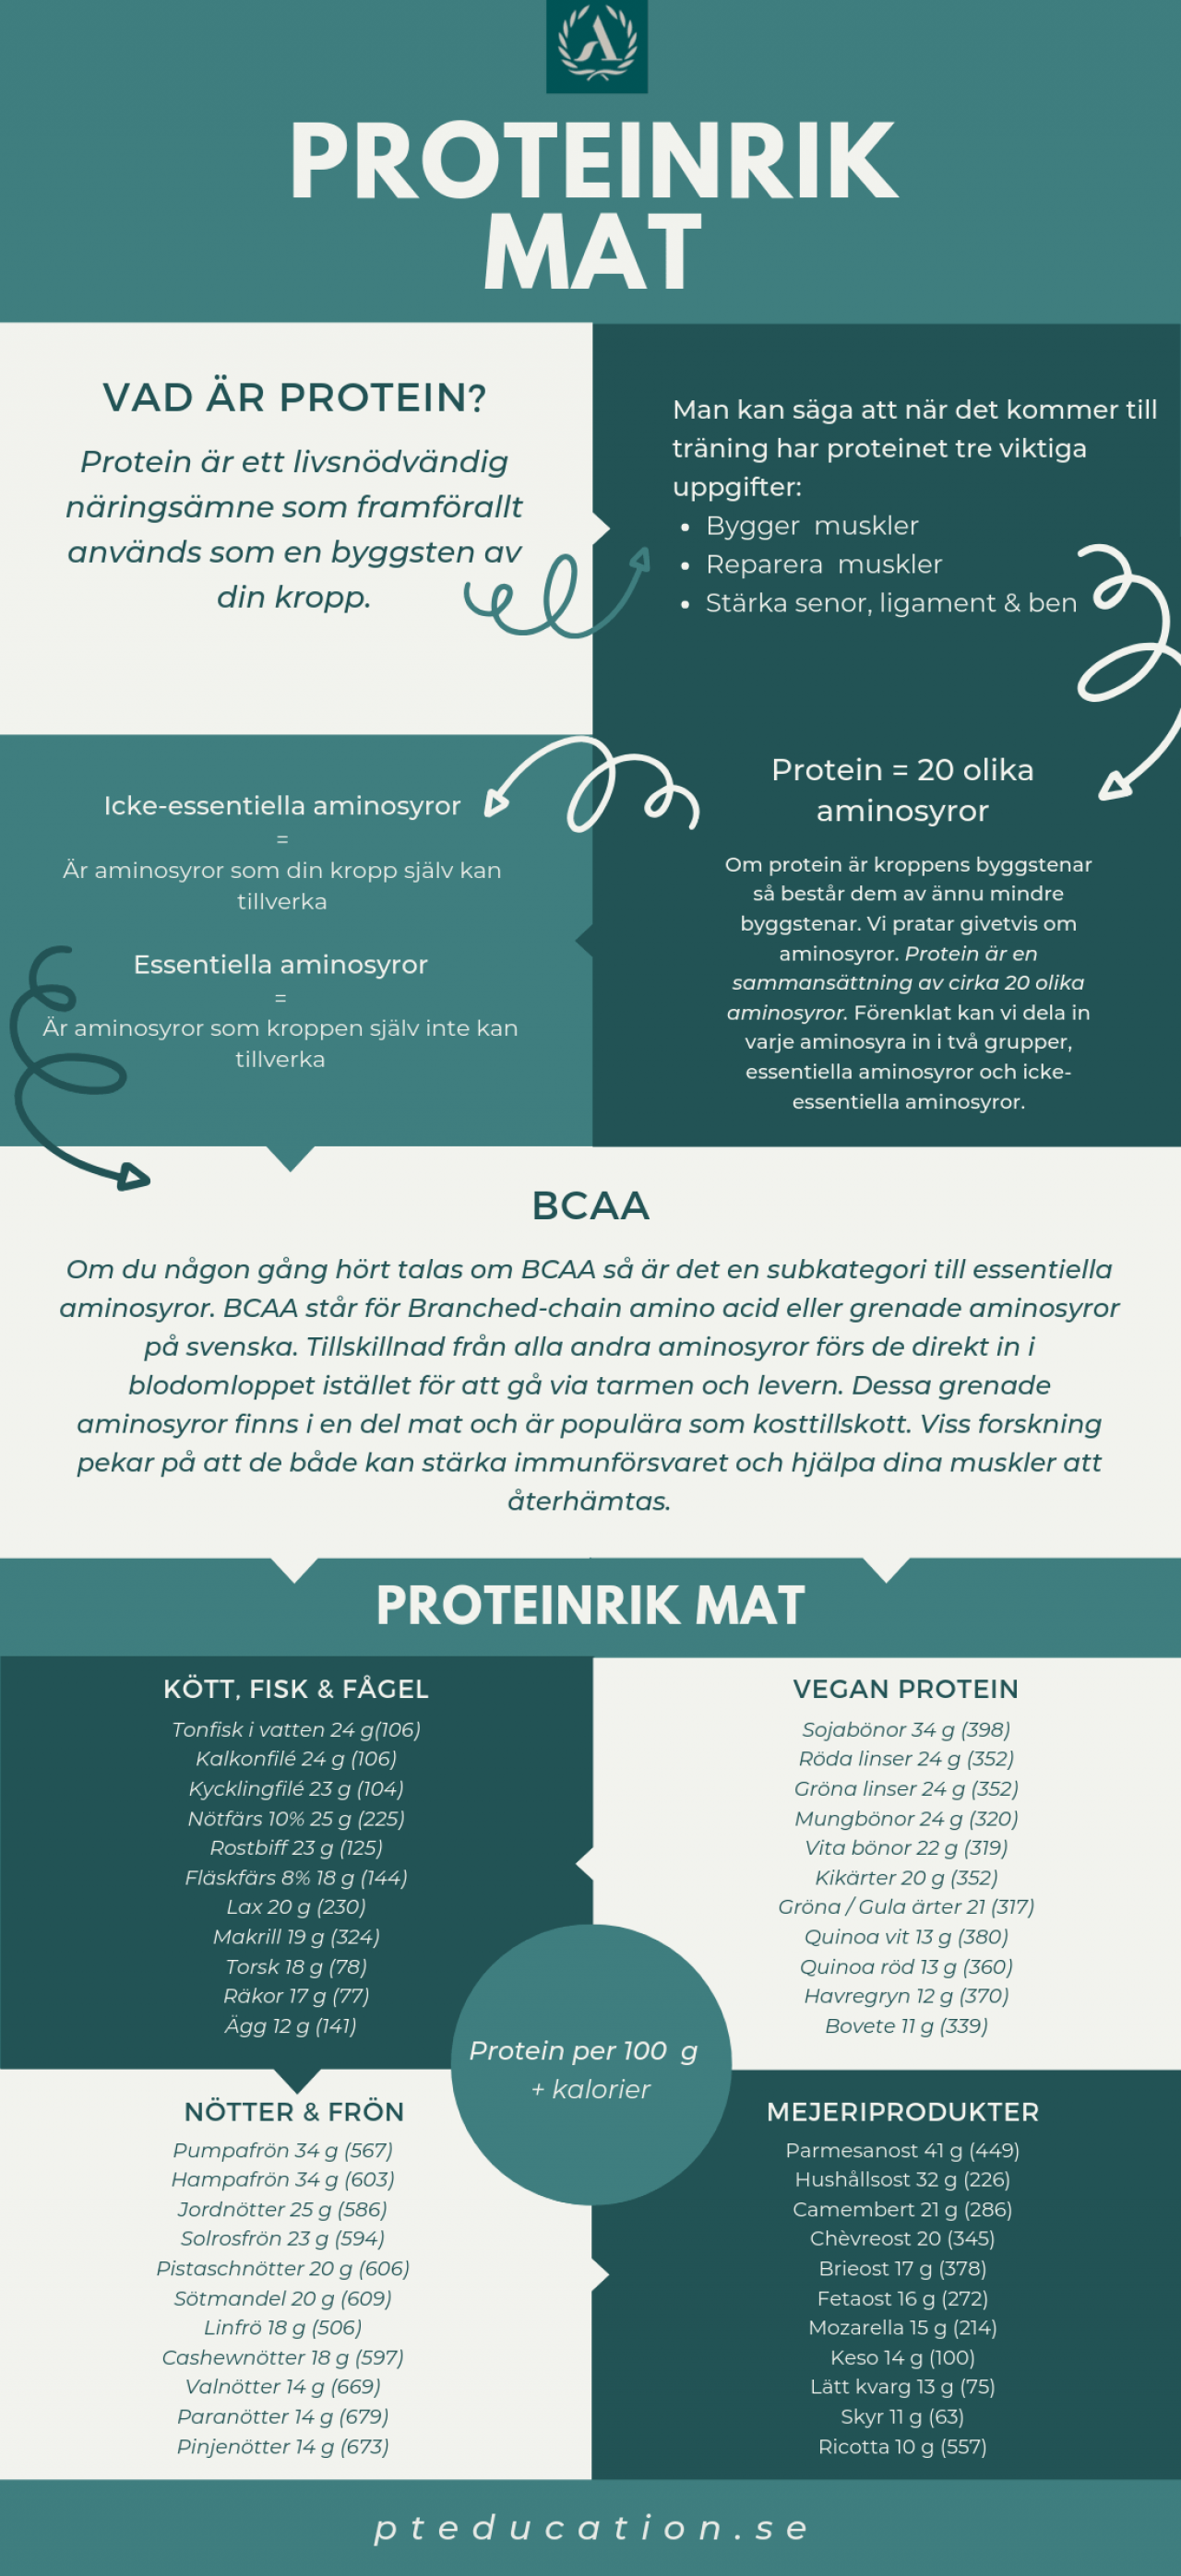 Proteinrik mat infographic Allt om protein och mat